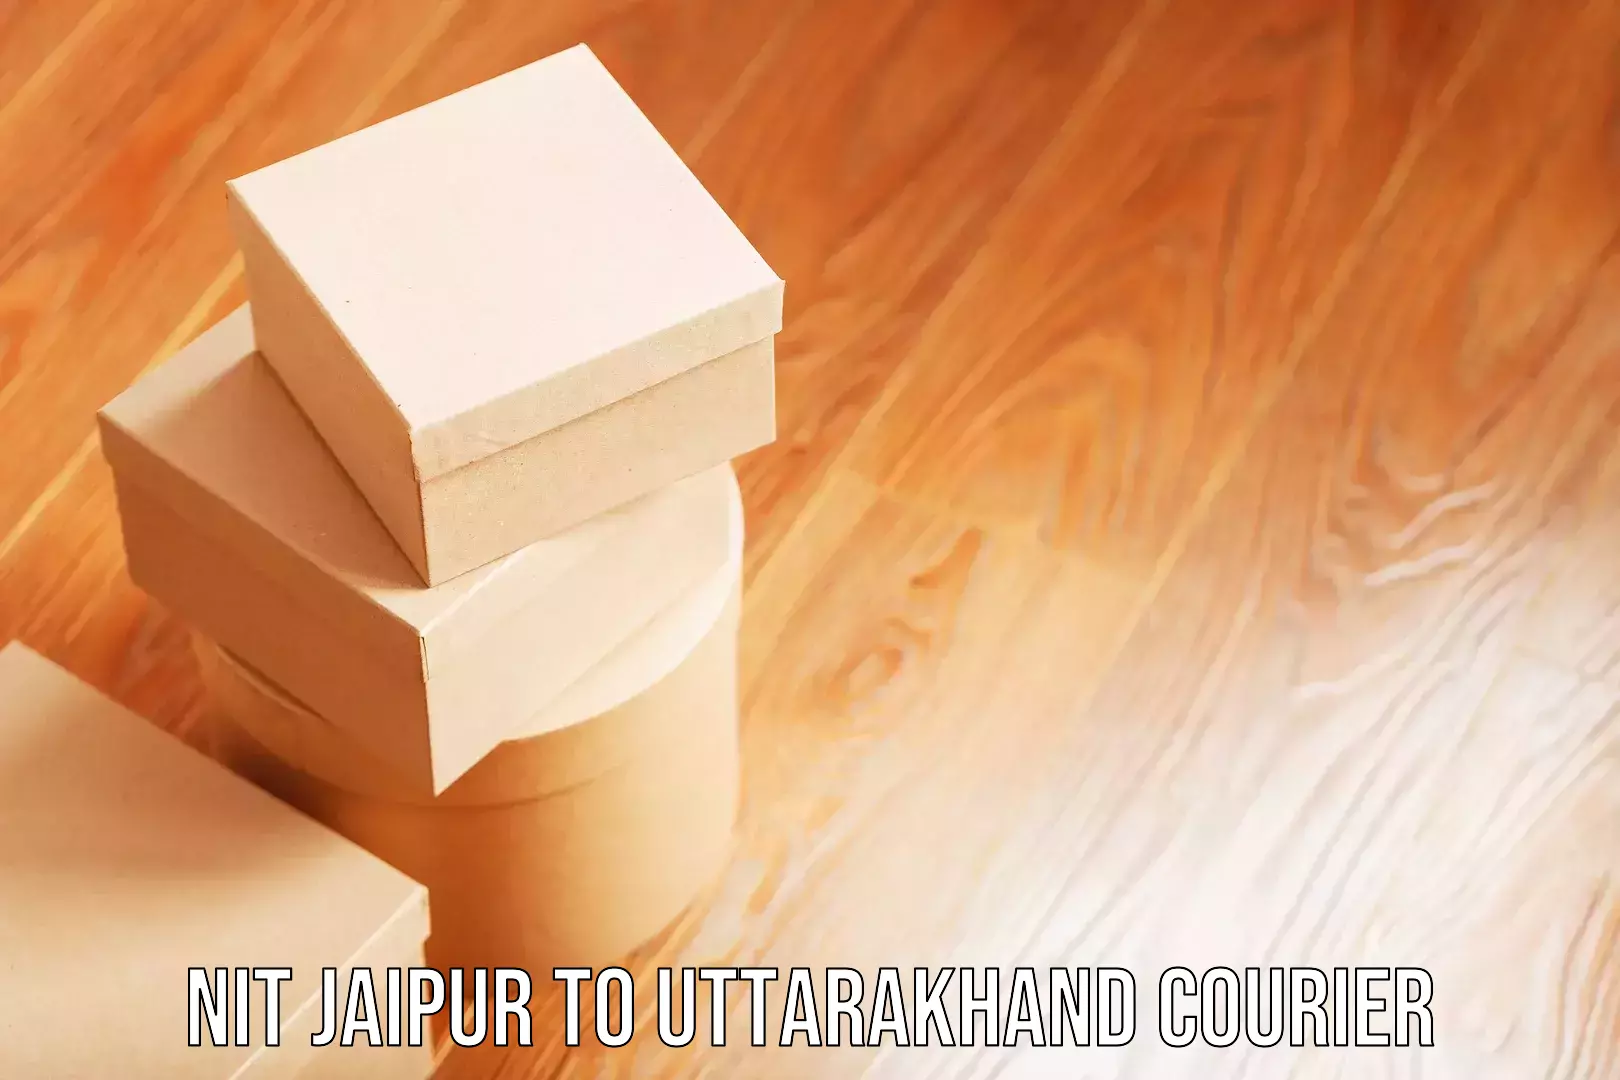 Luggage transport consulting NIT Jaipur to Uttarakhand